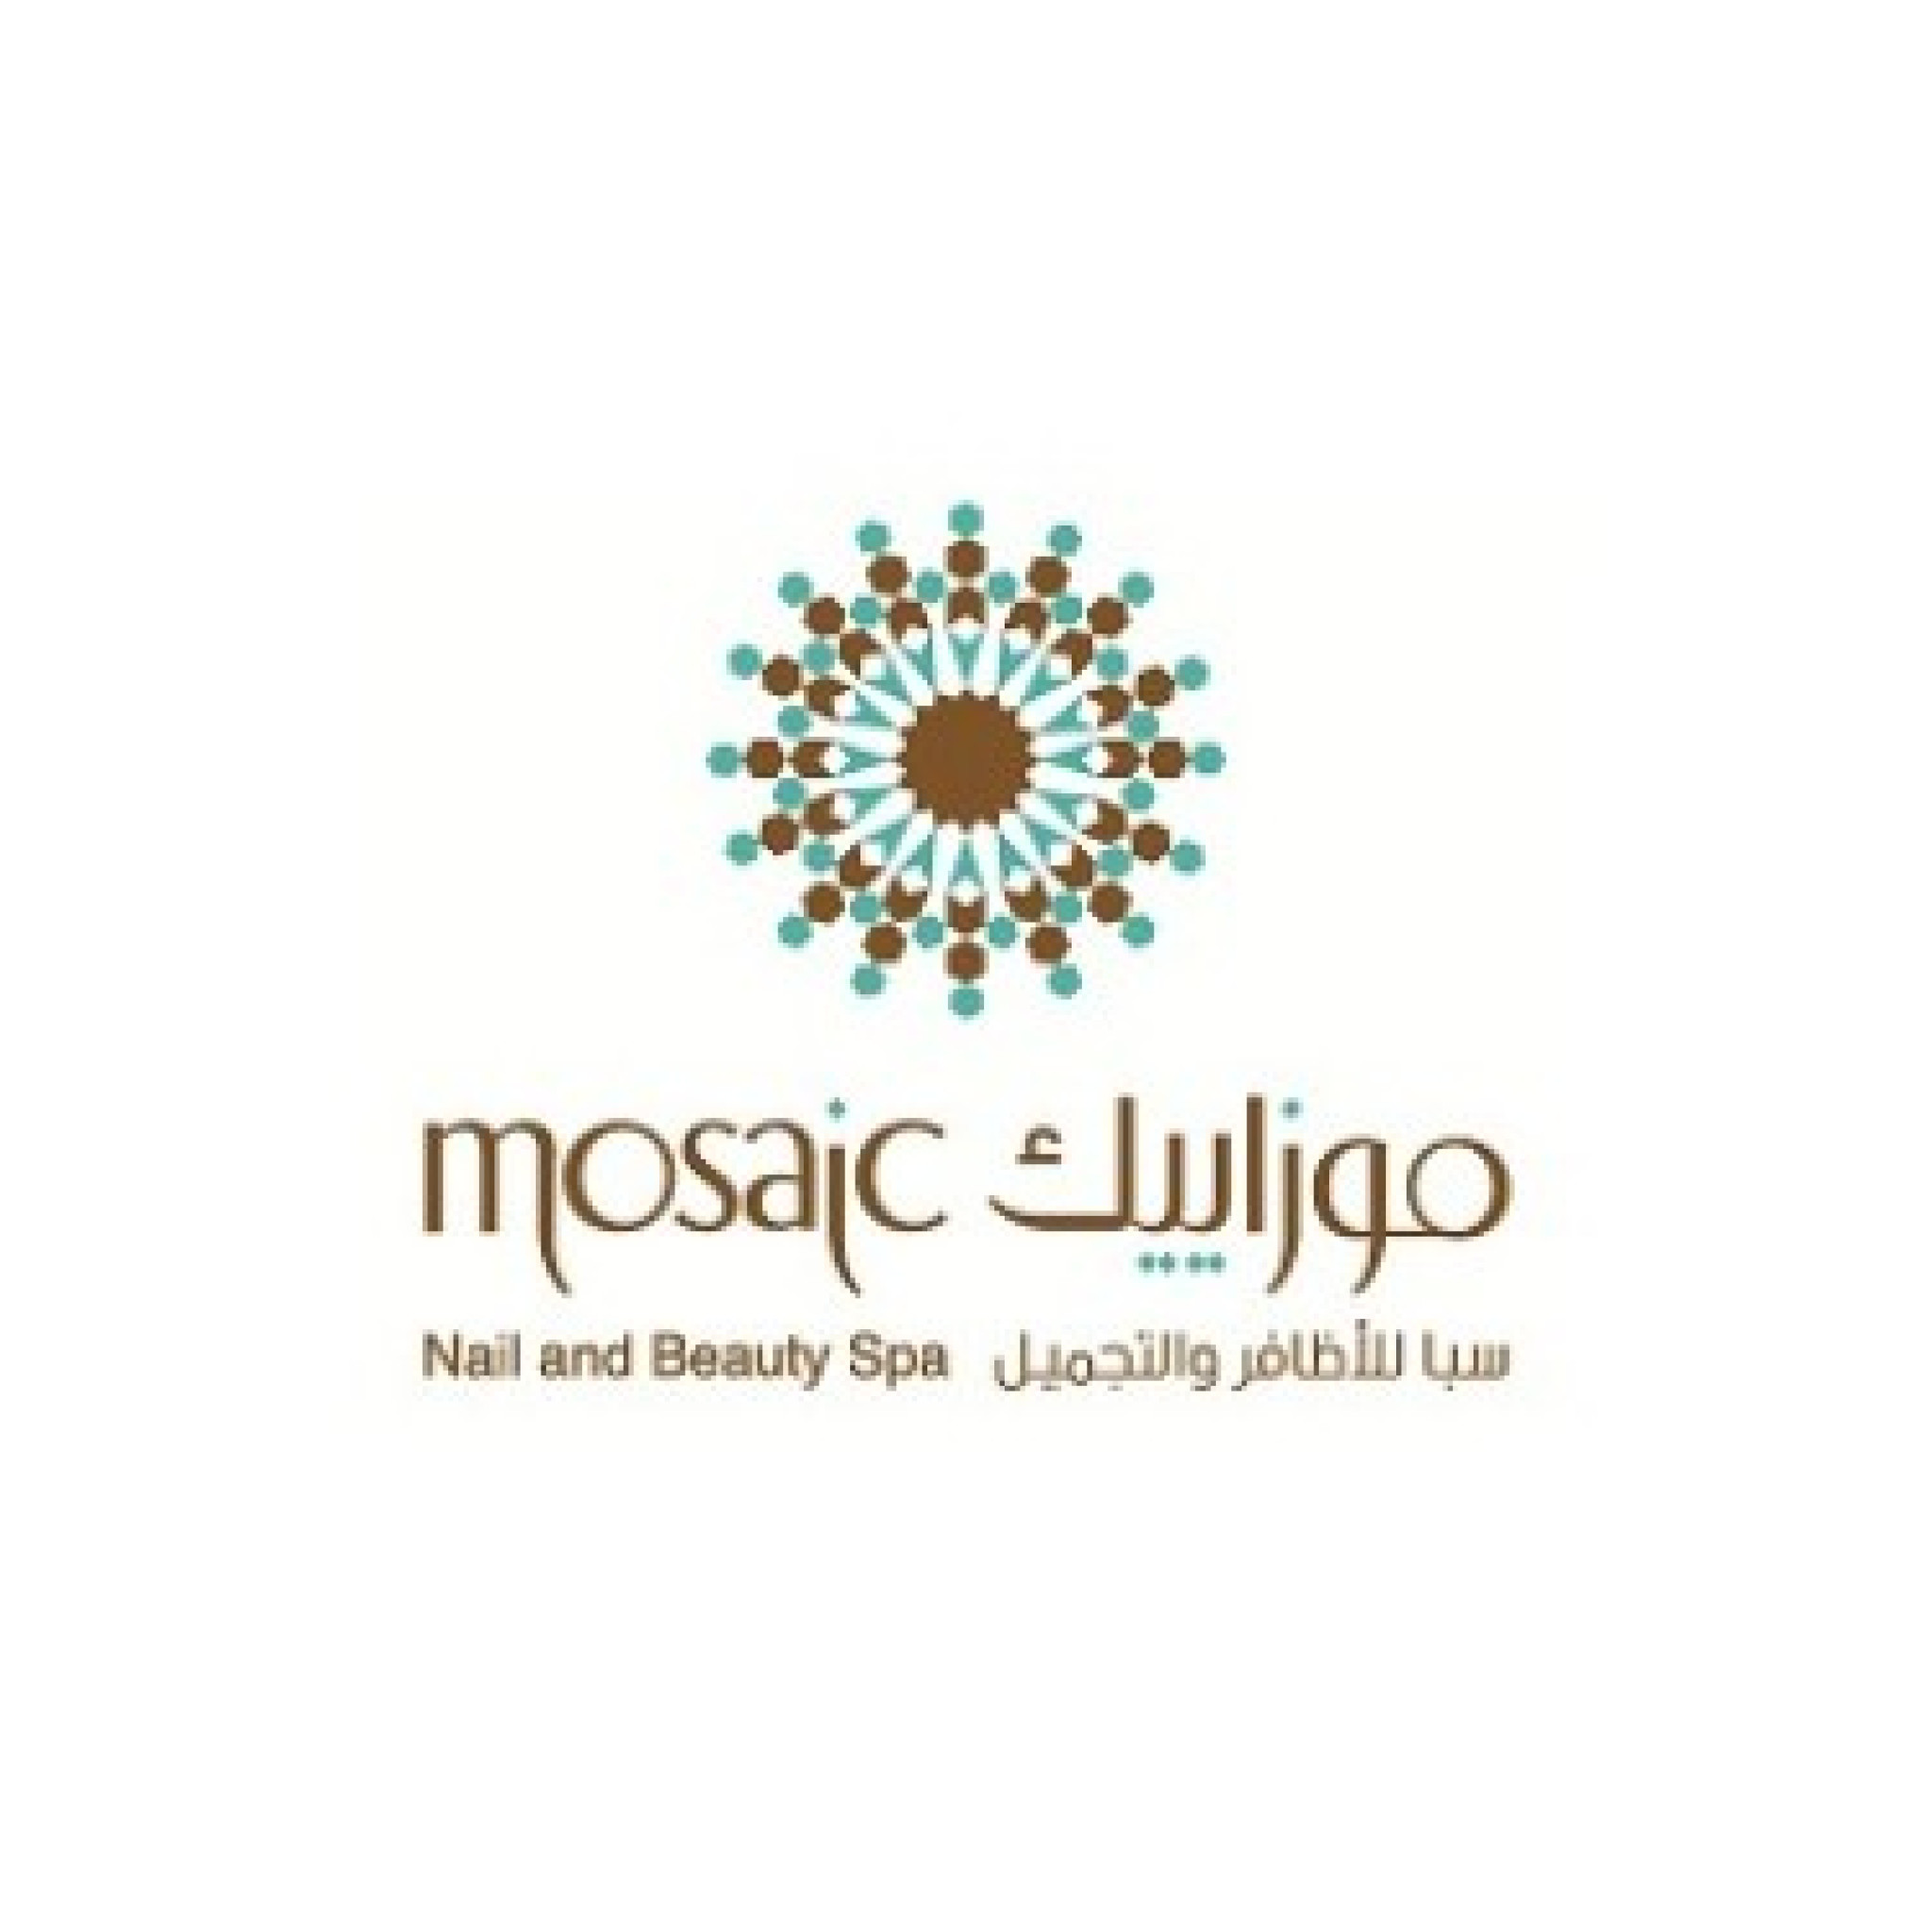 Mosaic Nail and Beauty Spa